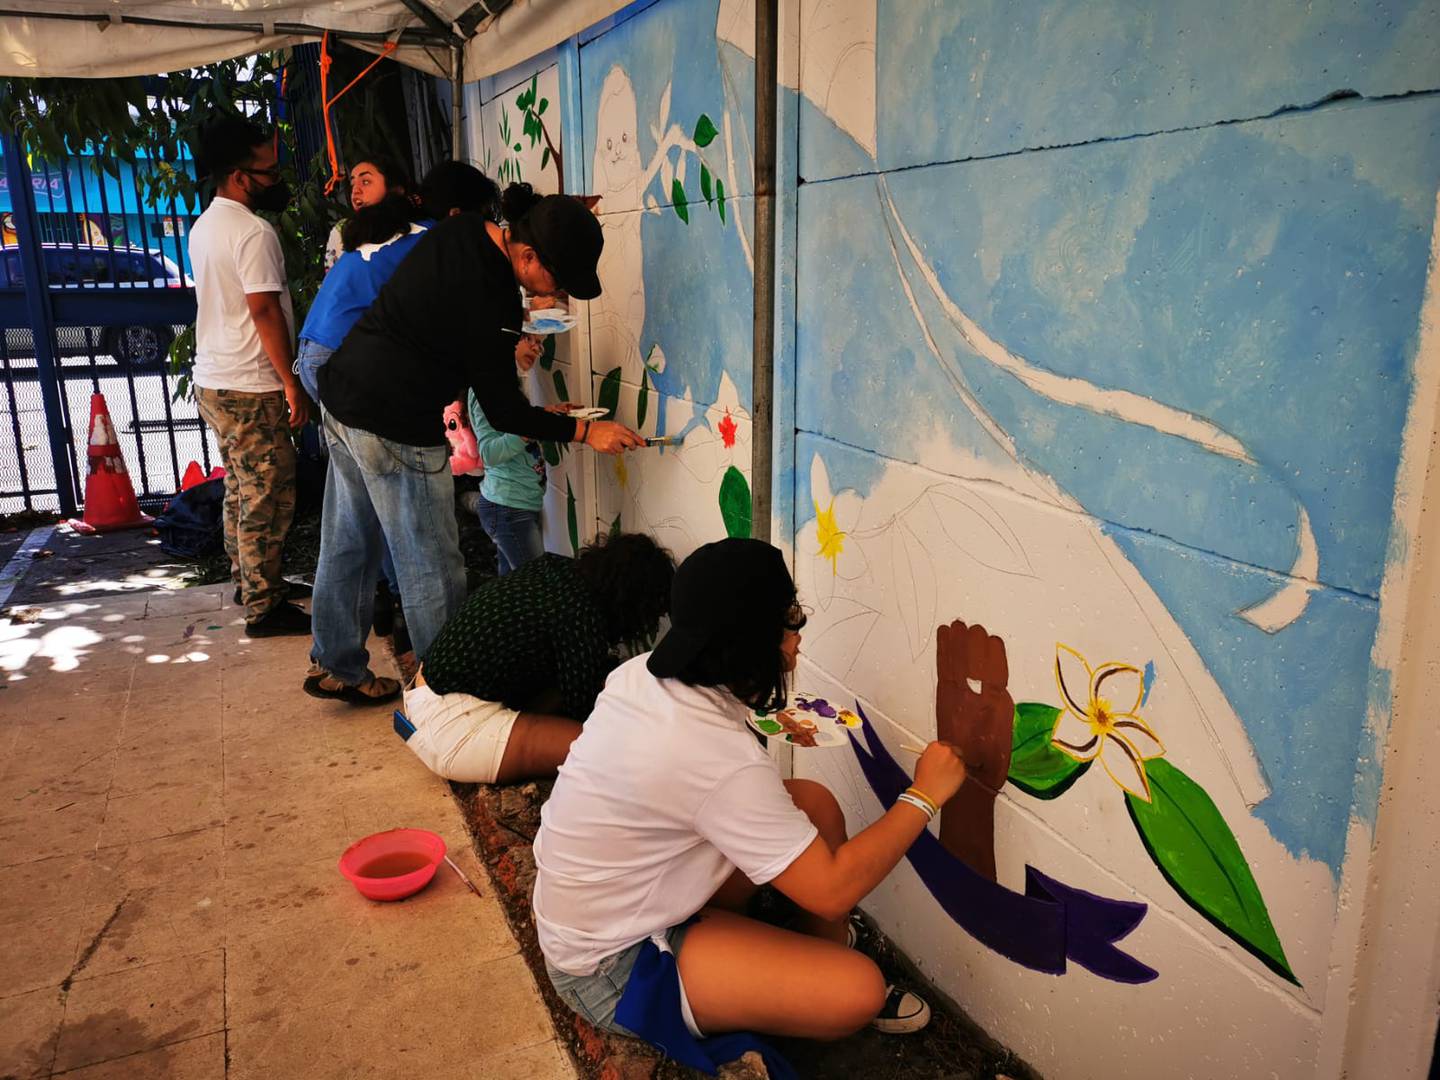 La Fundación Arias para la Paz y el Progreso Humano realizó la actividad “Cultura de paz”, la cual contó con varias expresiones artísticas de pintura, canto y baile nicaragüense como protesta contra la dictadura de Daniel Ortega